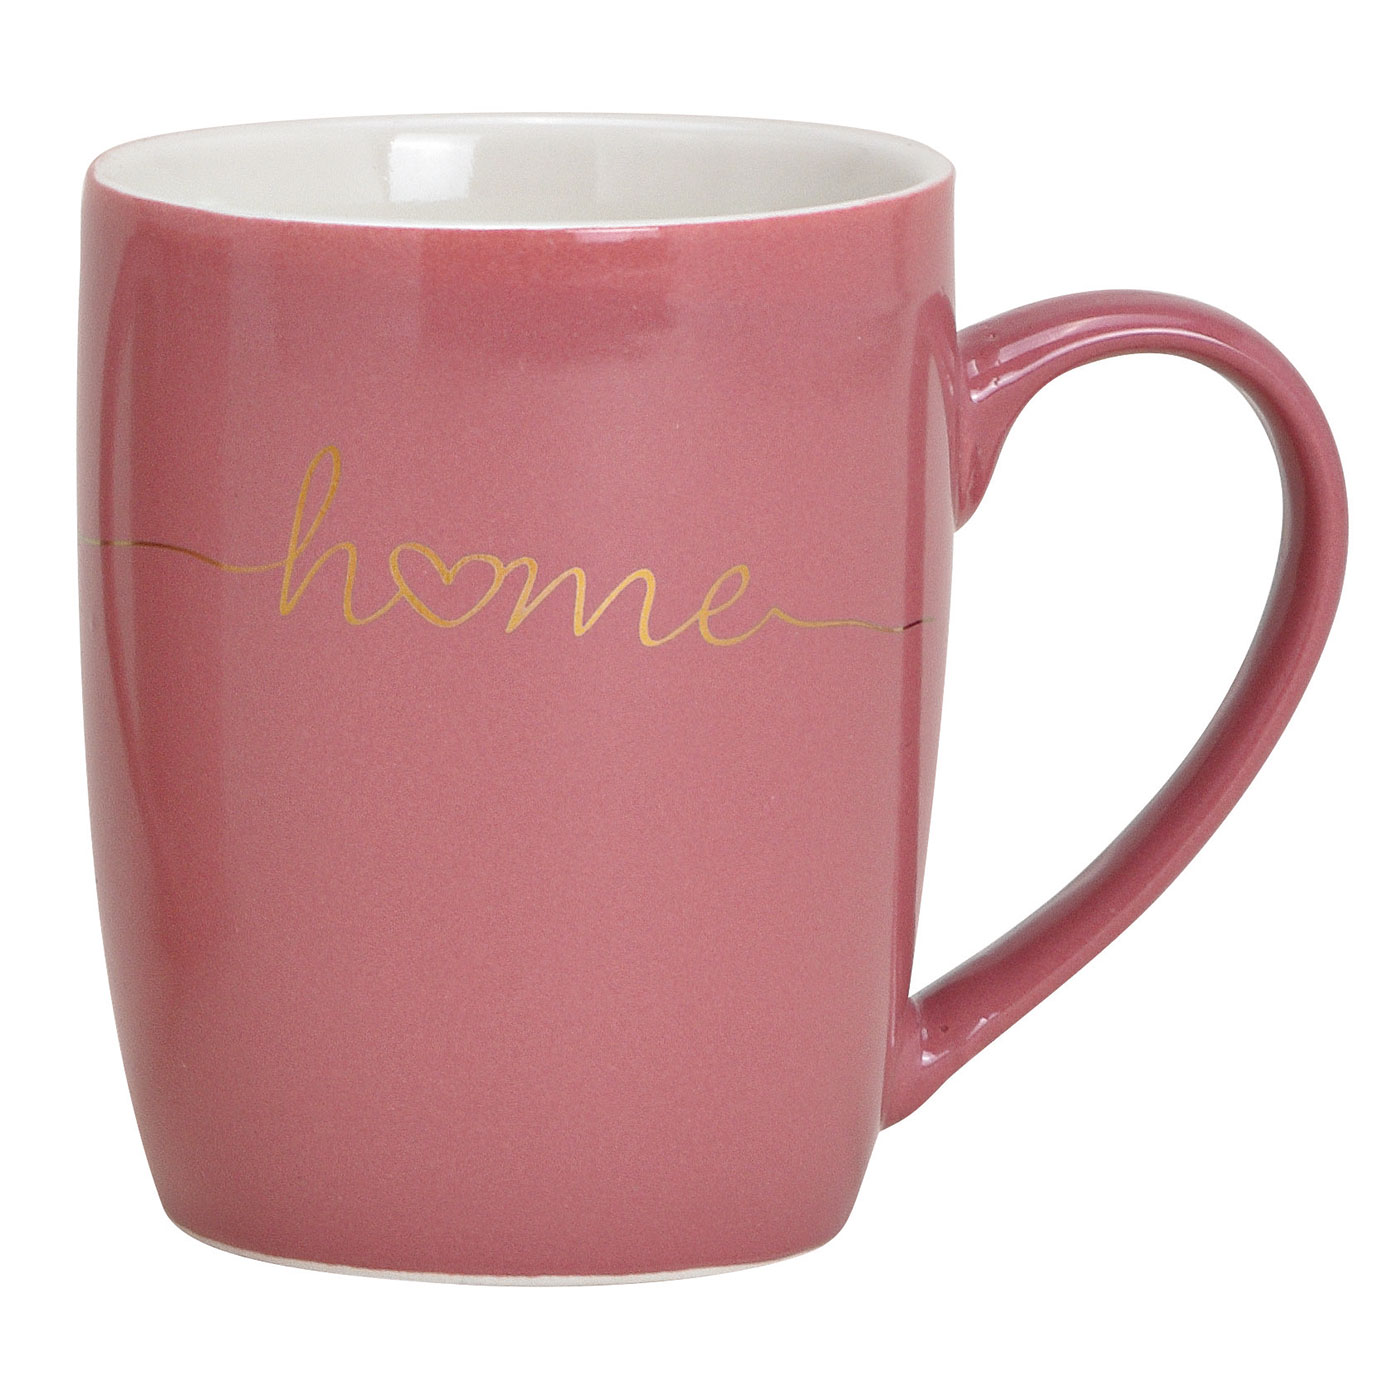 3er Set Becher 300ml Home Porzellan Pink Rosa Weiß Gold Kaffeepott Tasse